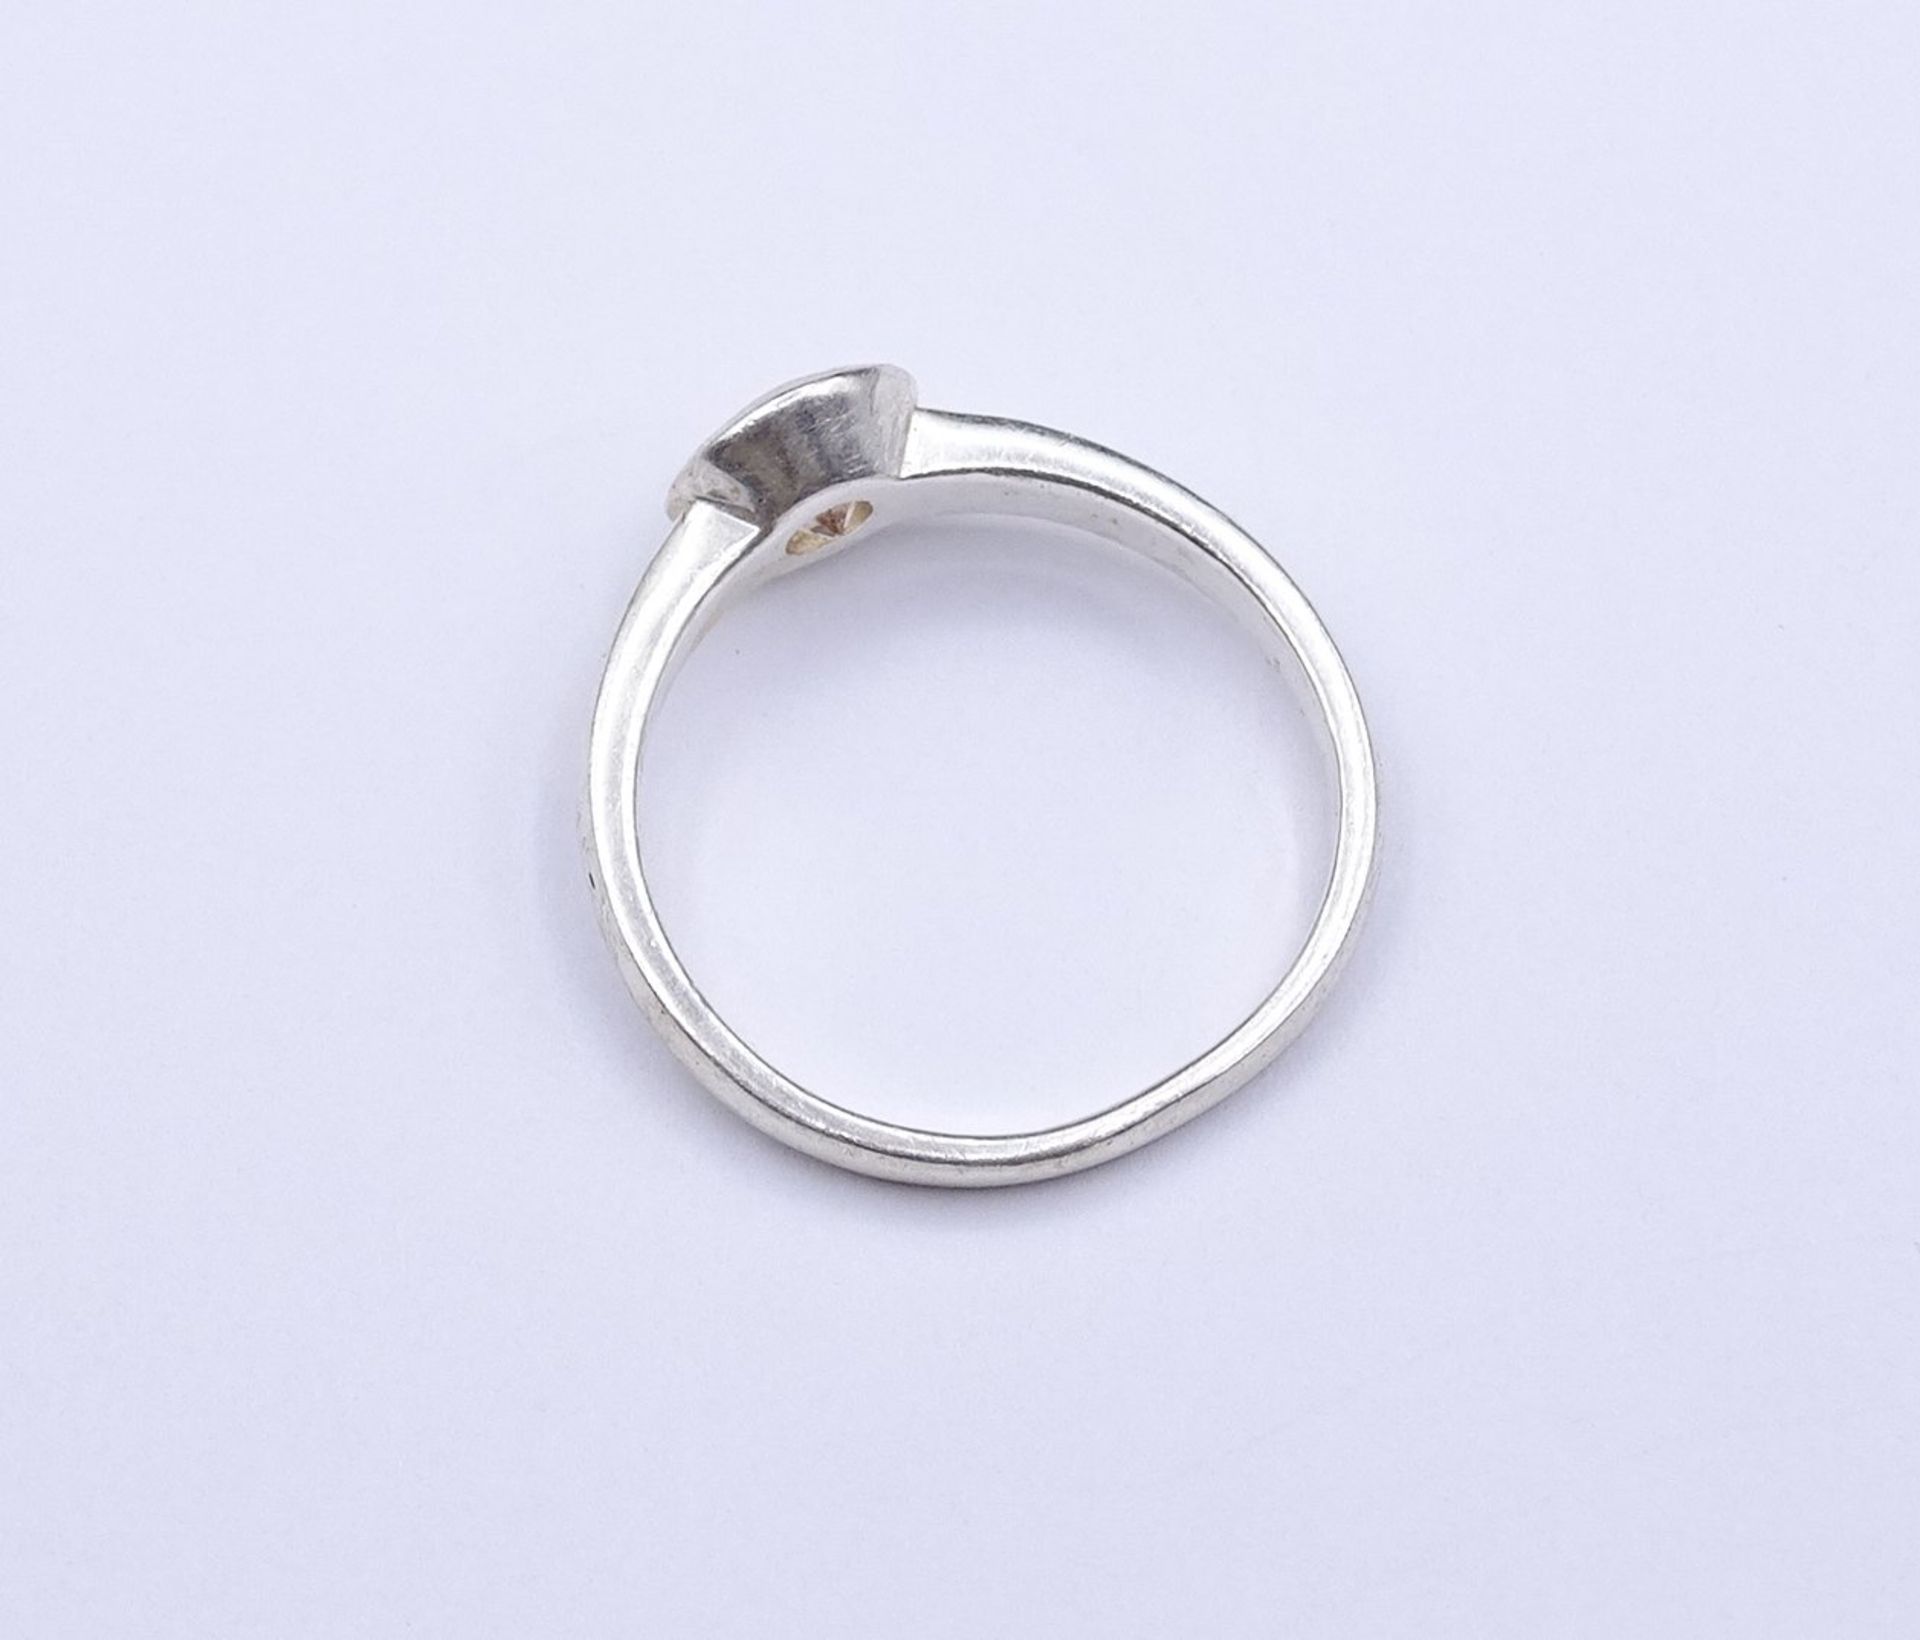 Silber Ring mit einen rund facc. Stein, 0.925, 2,6g. RG 55 - Bild 3 aus 3